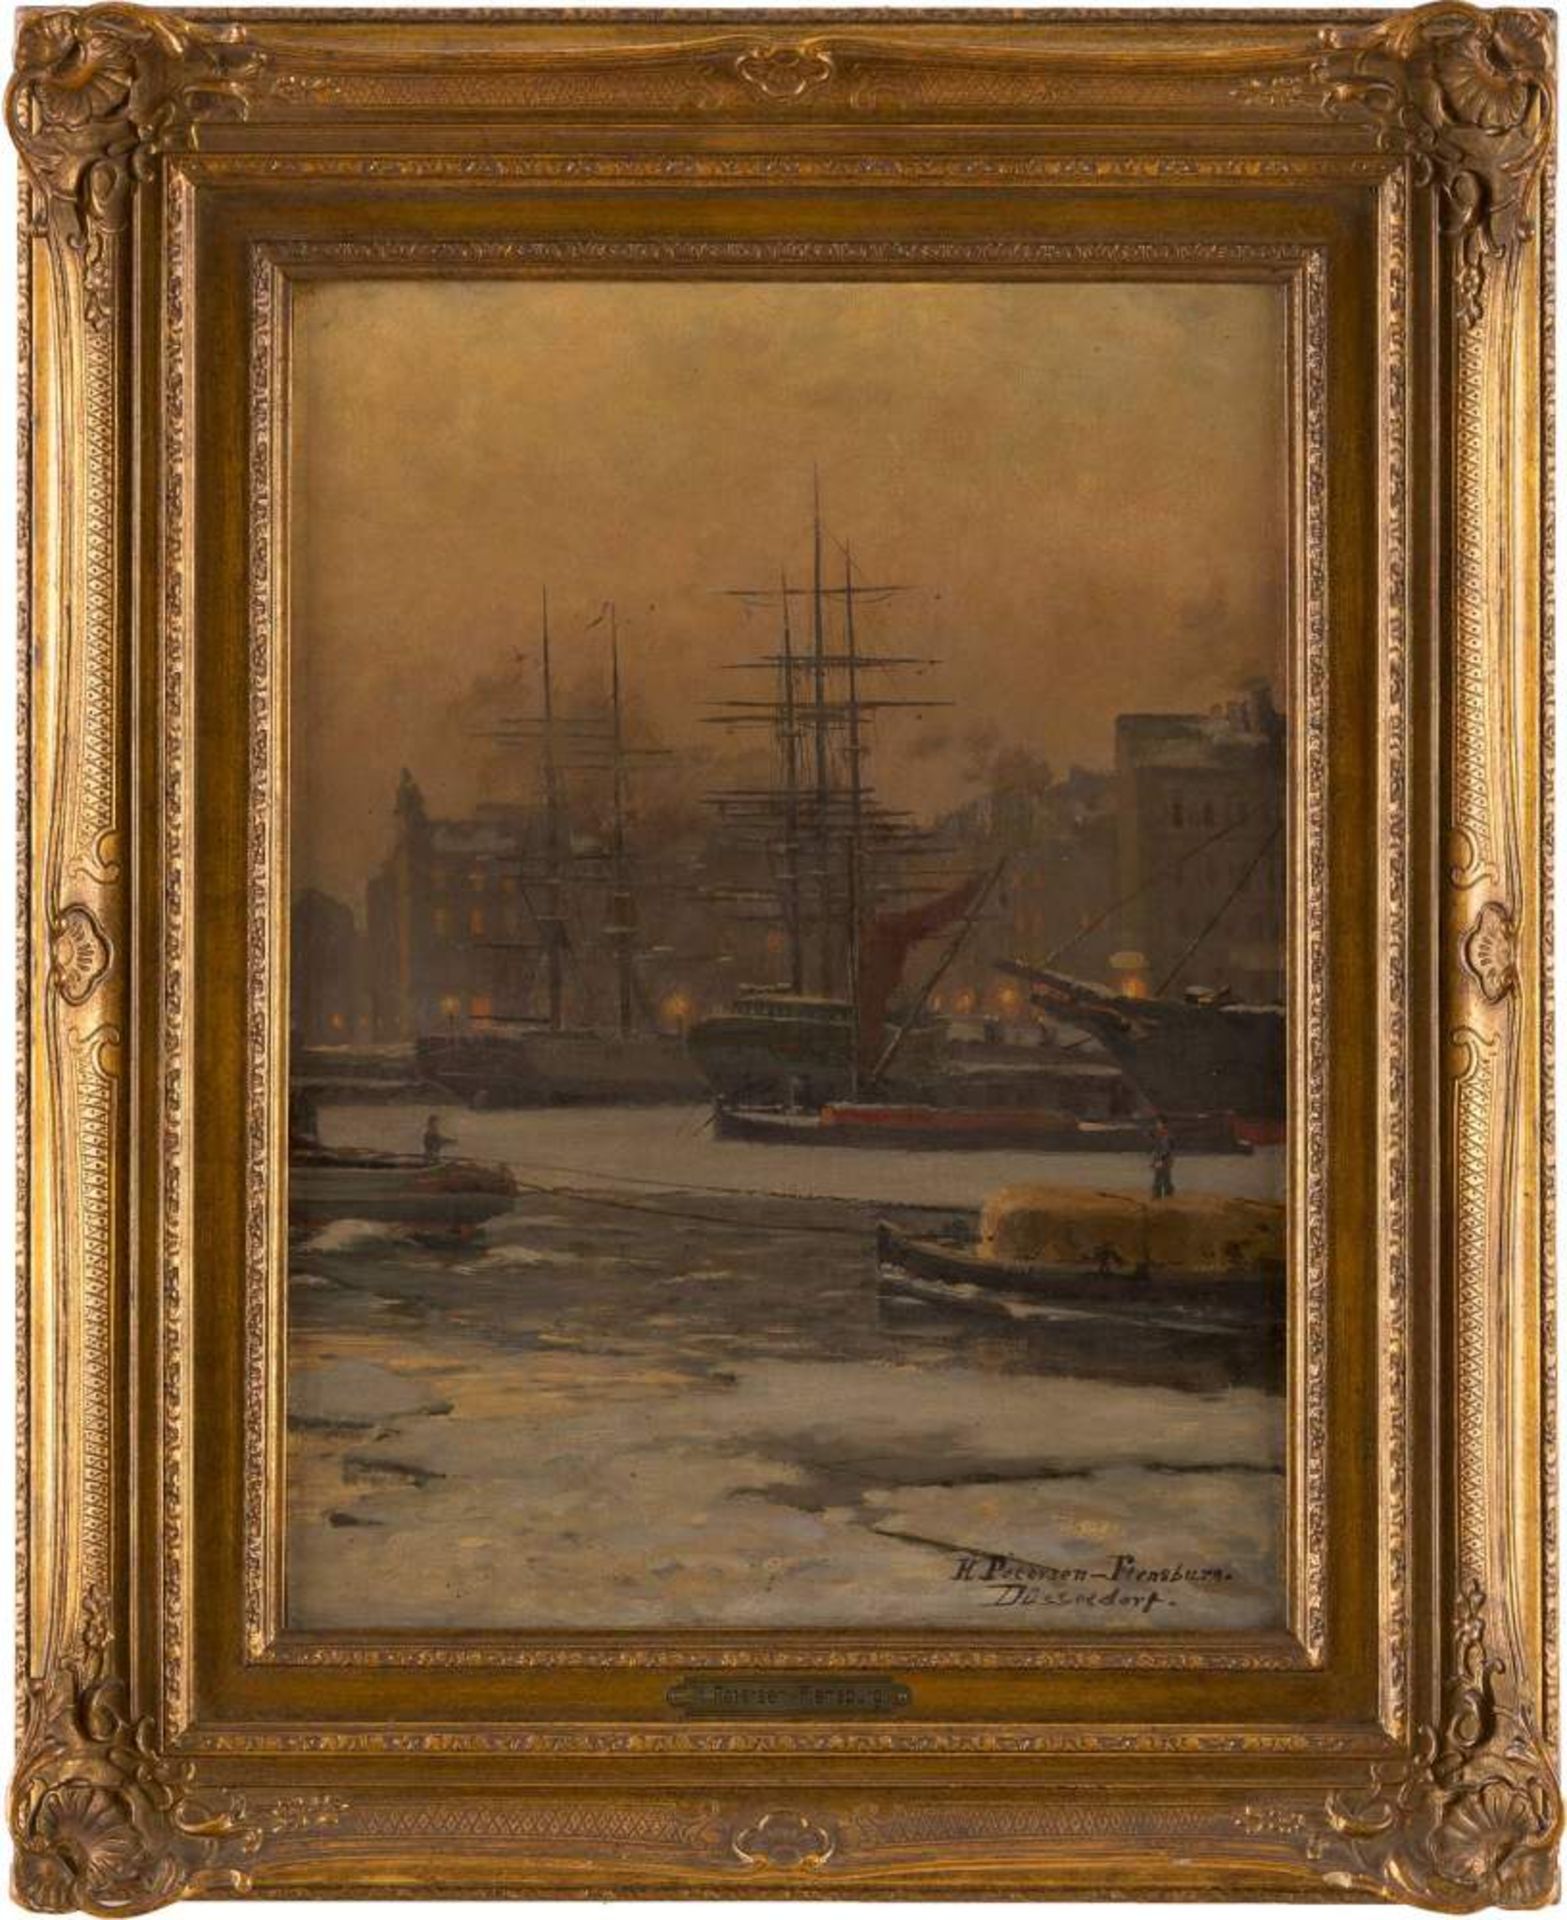 HEINRICH PETERSEN-FLENSBURG1861 Århus - 1908 DüsseldorfIm vereisten Hafen Öl auf Platte. 47 x 35 cm.